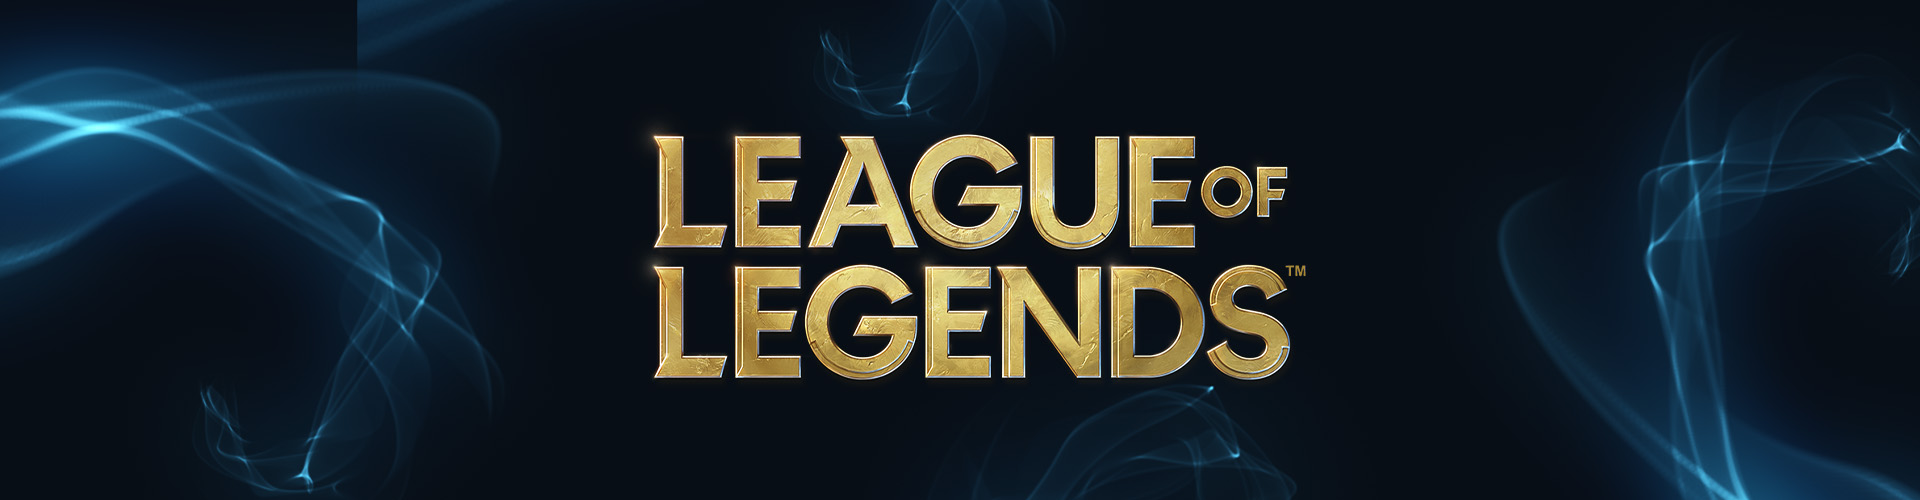 Chilli Beans lança coleção em parceria com game League of Legends - Guia  JeansWear